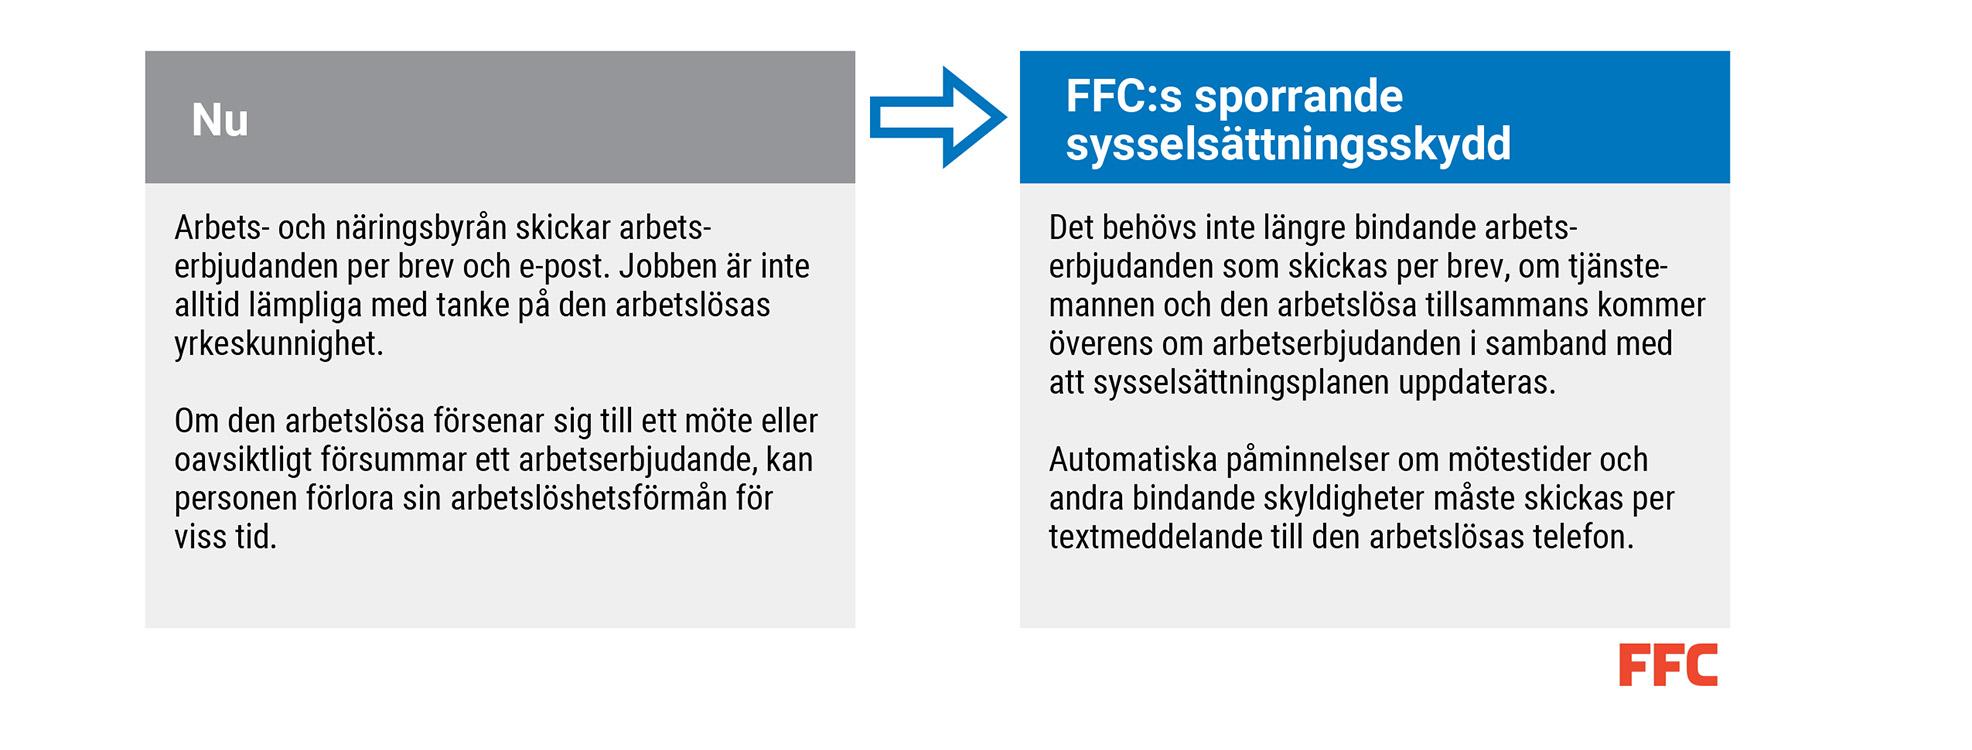 FFCs sporrande sysselsättningsskydd